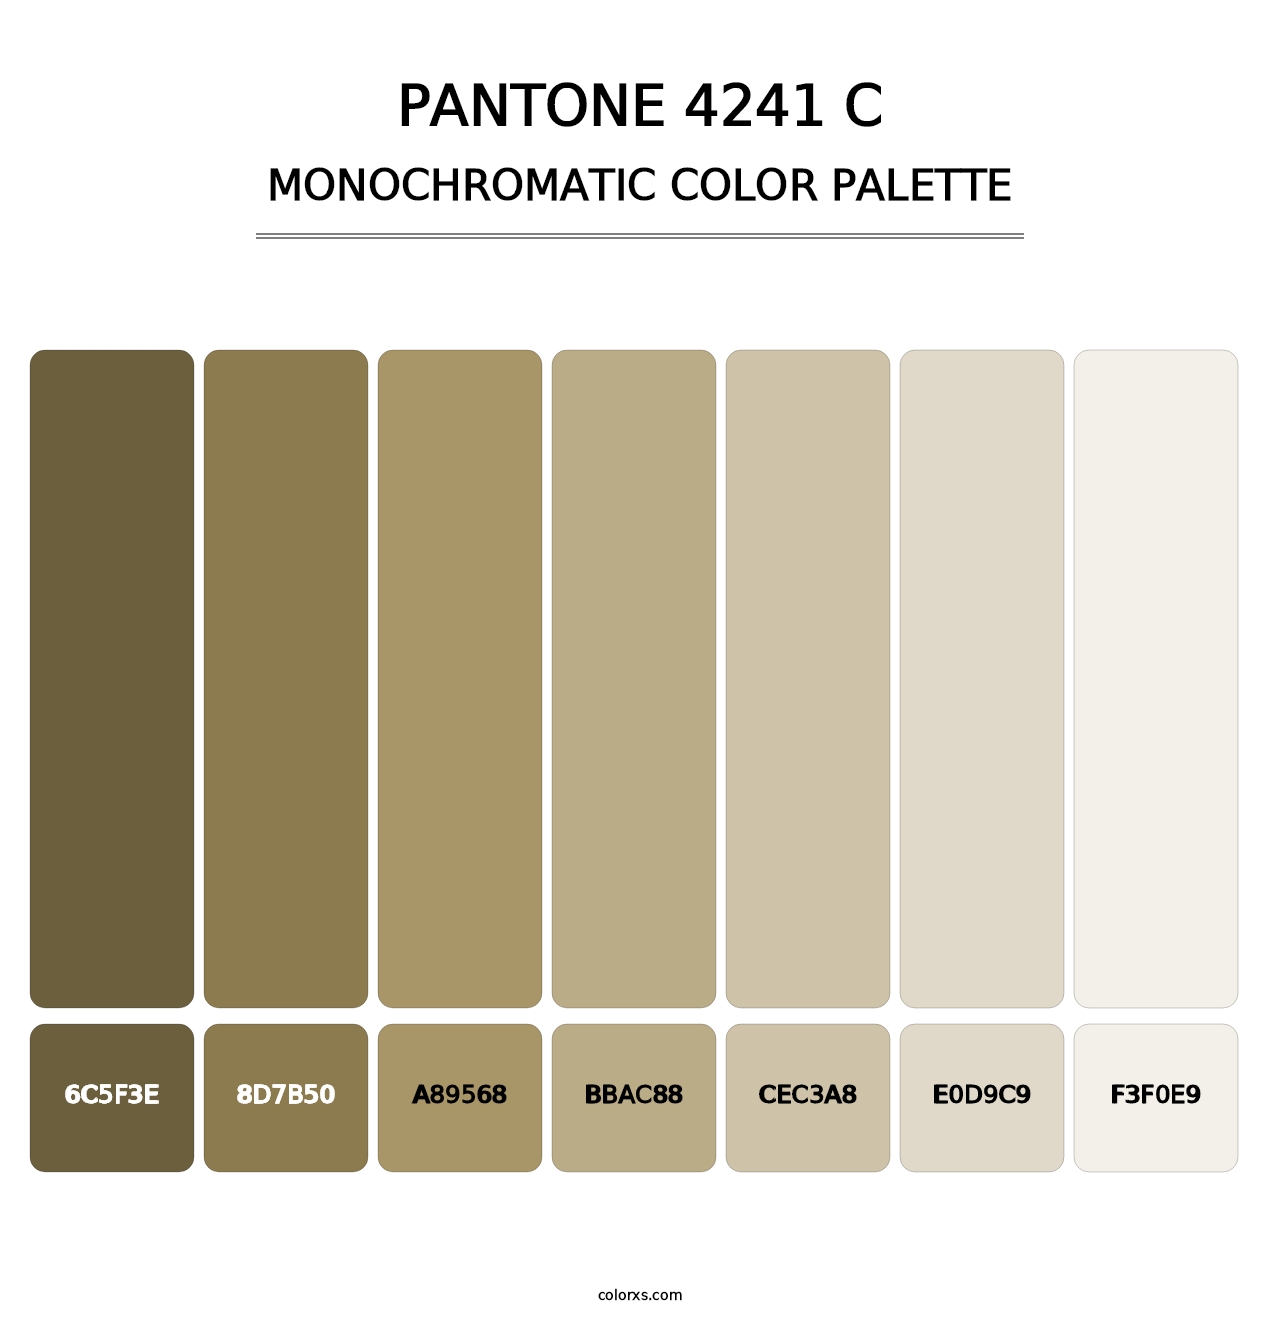 PANTONE 4241 C - Monochromatic Color Palette